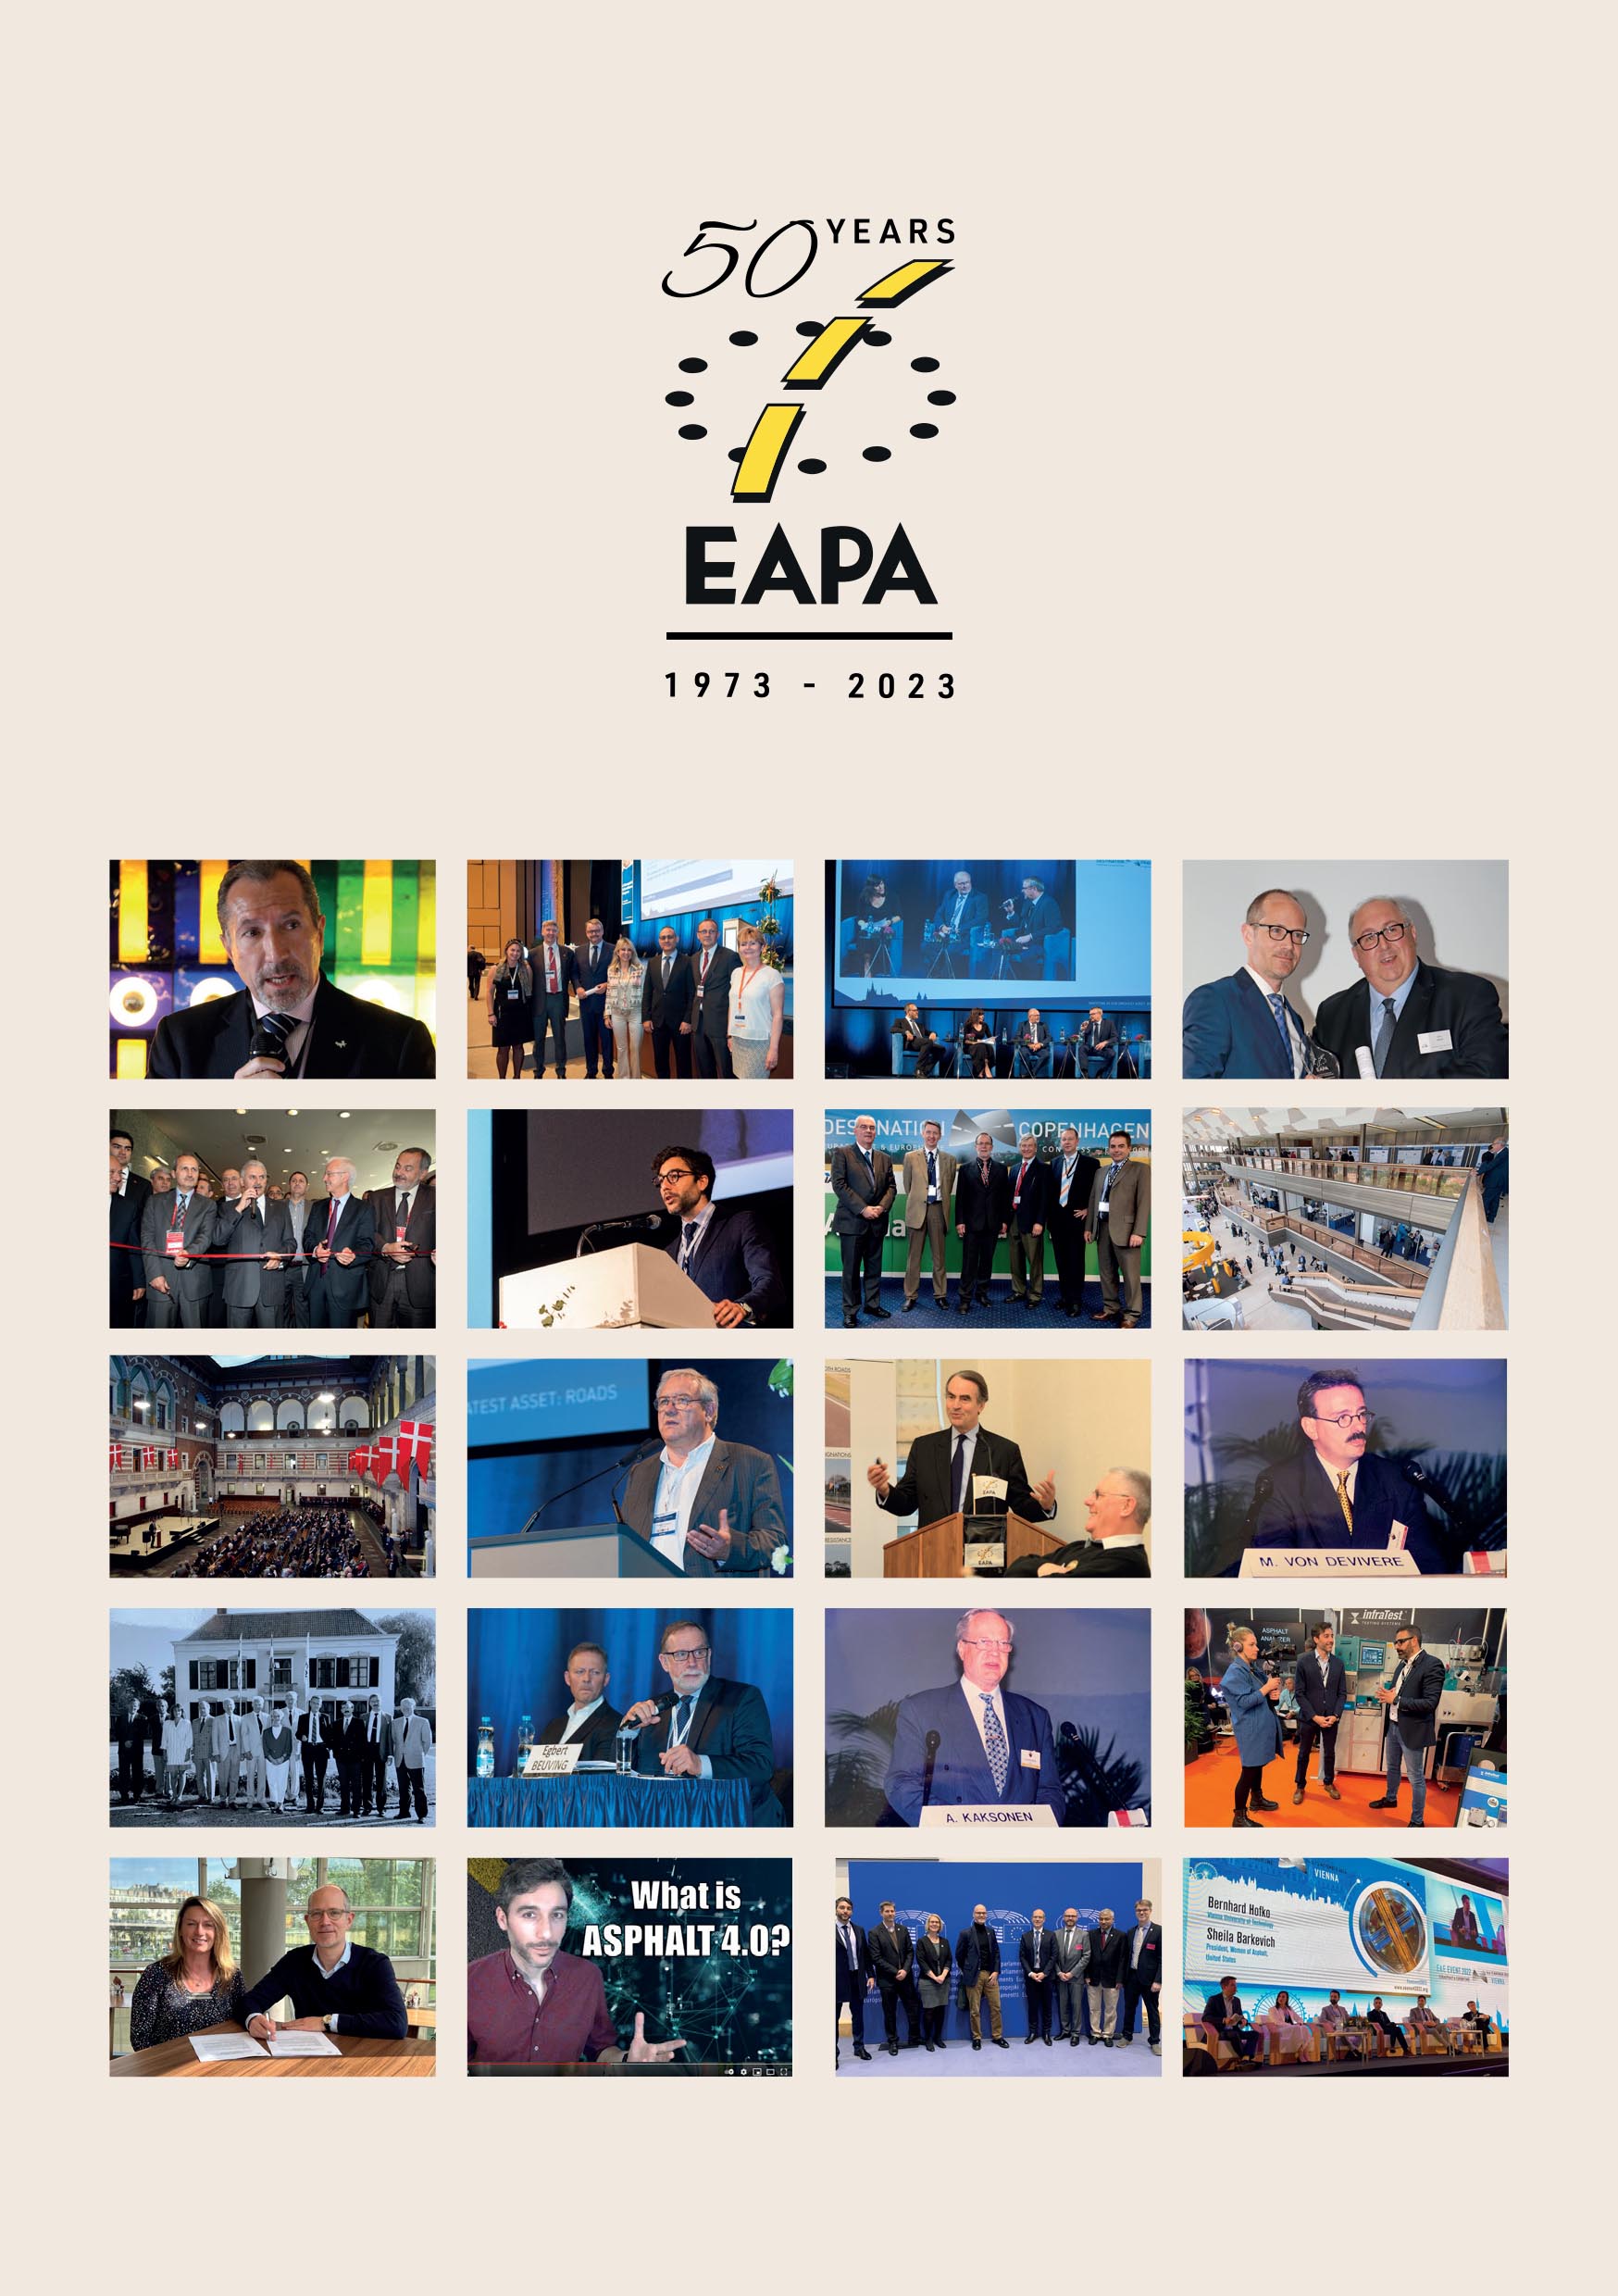 History of EAPA